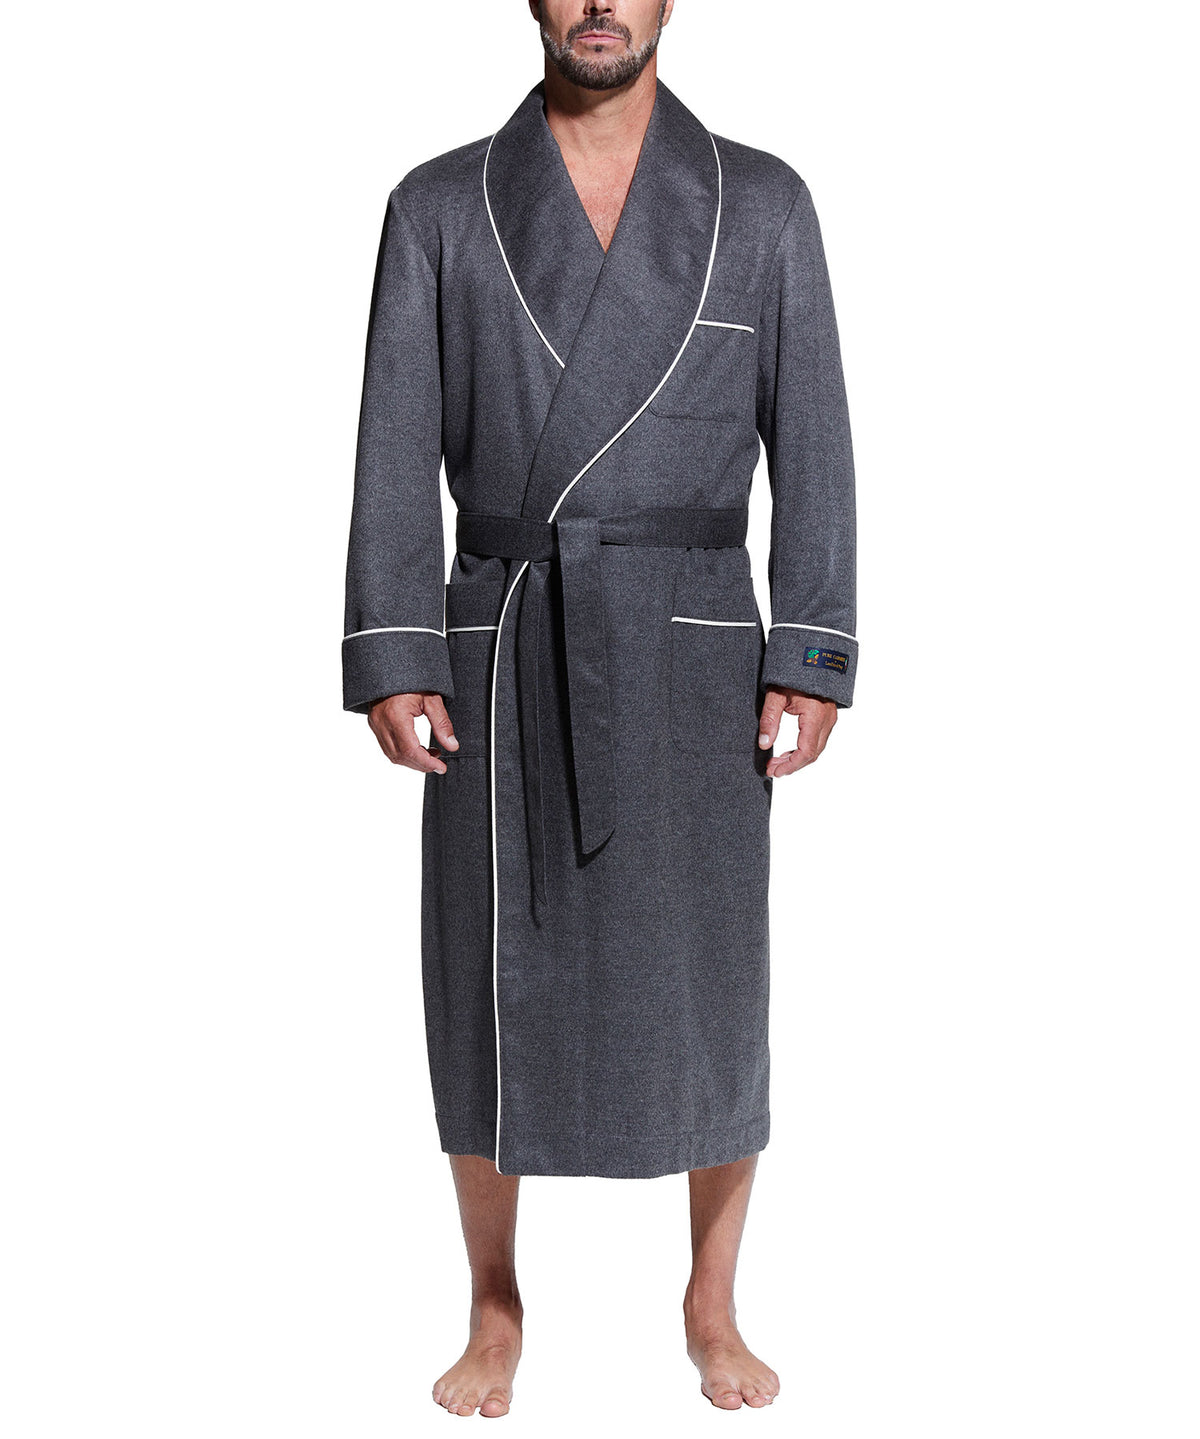 Robe châle en cachemire personnalisable noire Westport sur commande, Men's Big & Tall